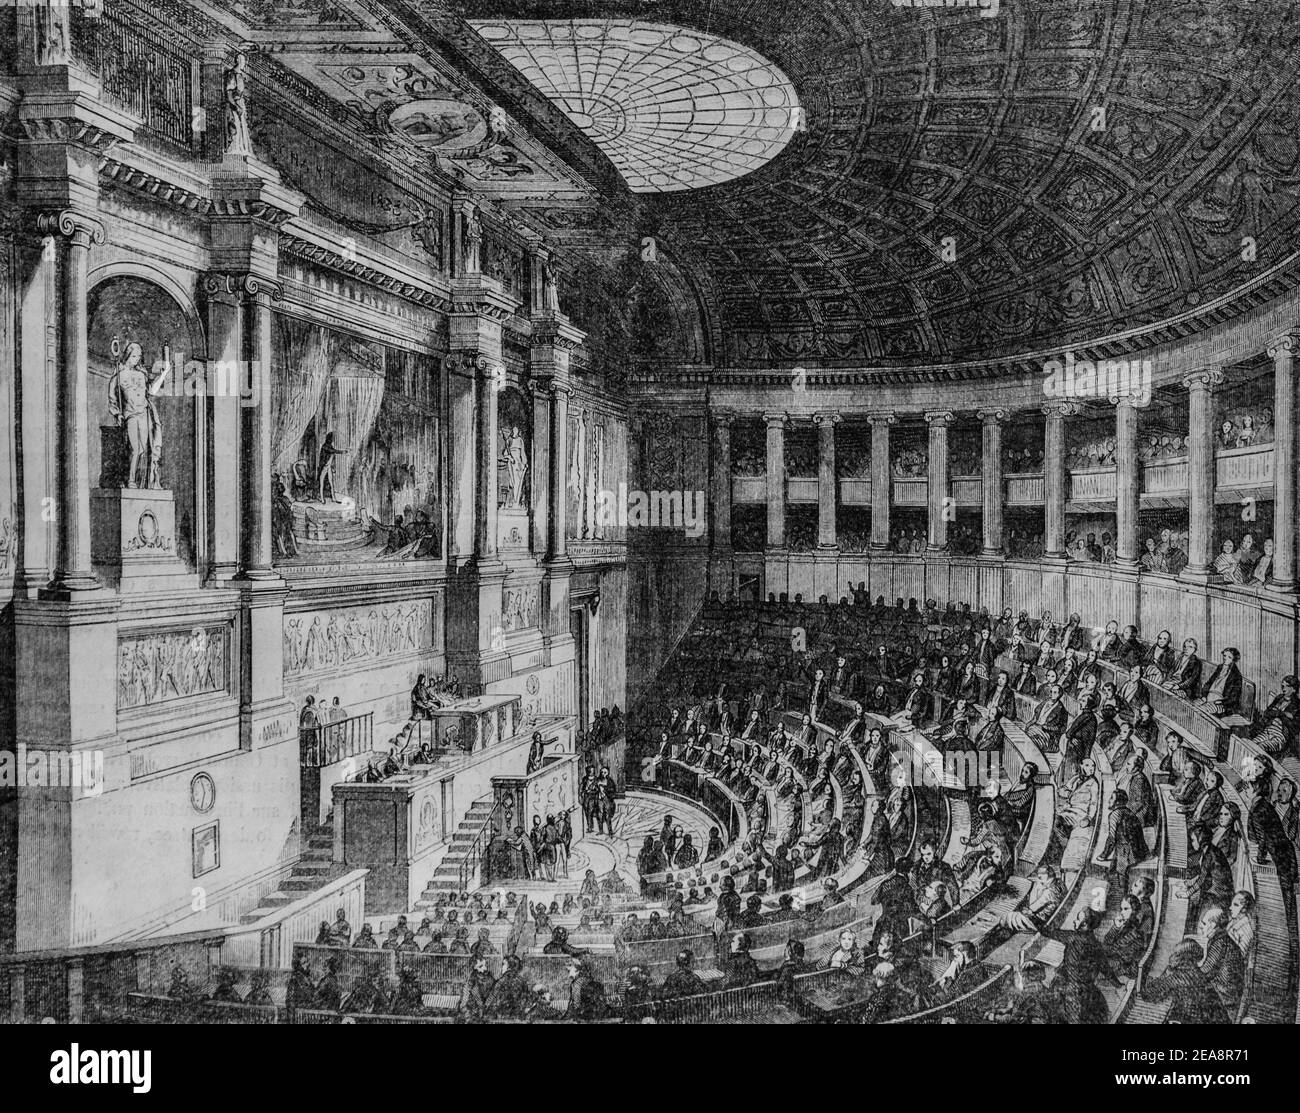 chambre des deputes, tableau de paris par edmond texier,éditeur paulin et le chevalier 1852 Banque D'Images